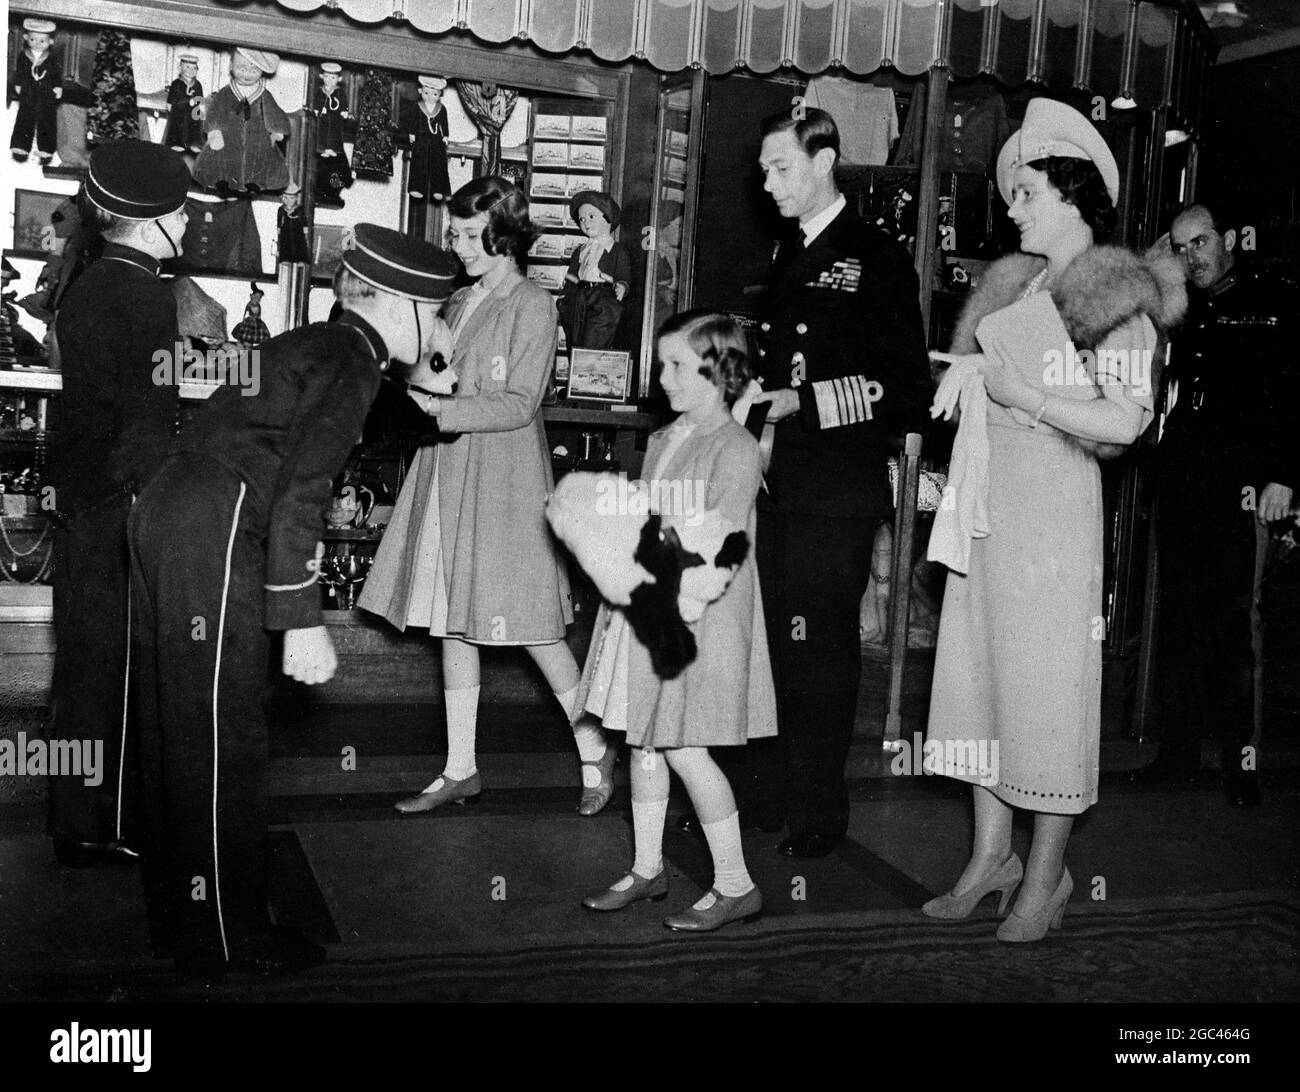 König Georg VI. Und Königin Elisabeth auf Kanada Tour 1939 . Der König und die Königin und die Prinzessinnen auf dem Linienschiff Express of Britain als einer der Page-Boys verneigen sich, nachdem sie riesige Pandas präsentiert hatten, die von der Crew Prinzessin Margaret gezeichnet worden waren. Stockfoto